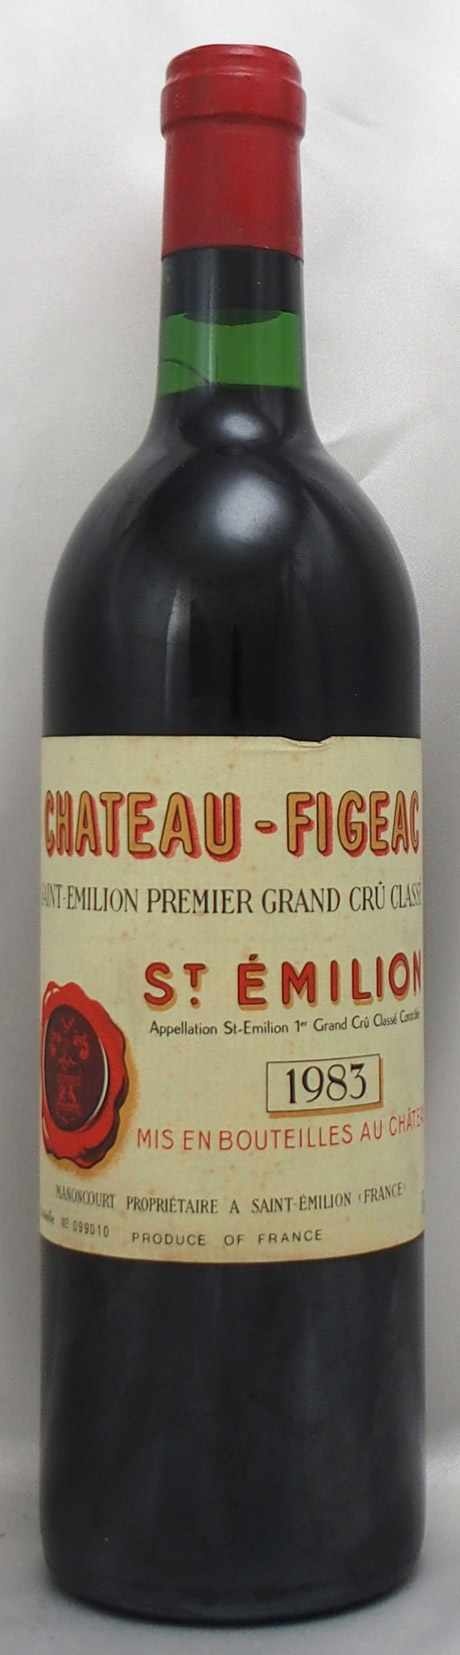 種類赤フランス サン・テミリオン シャトー フィジャック 1983年